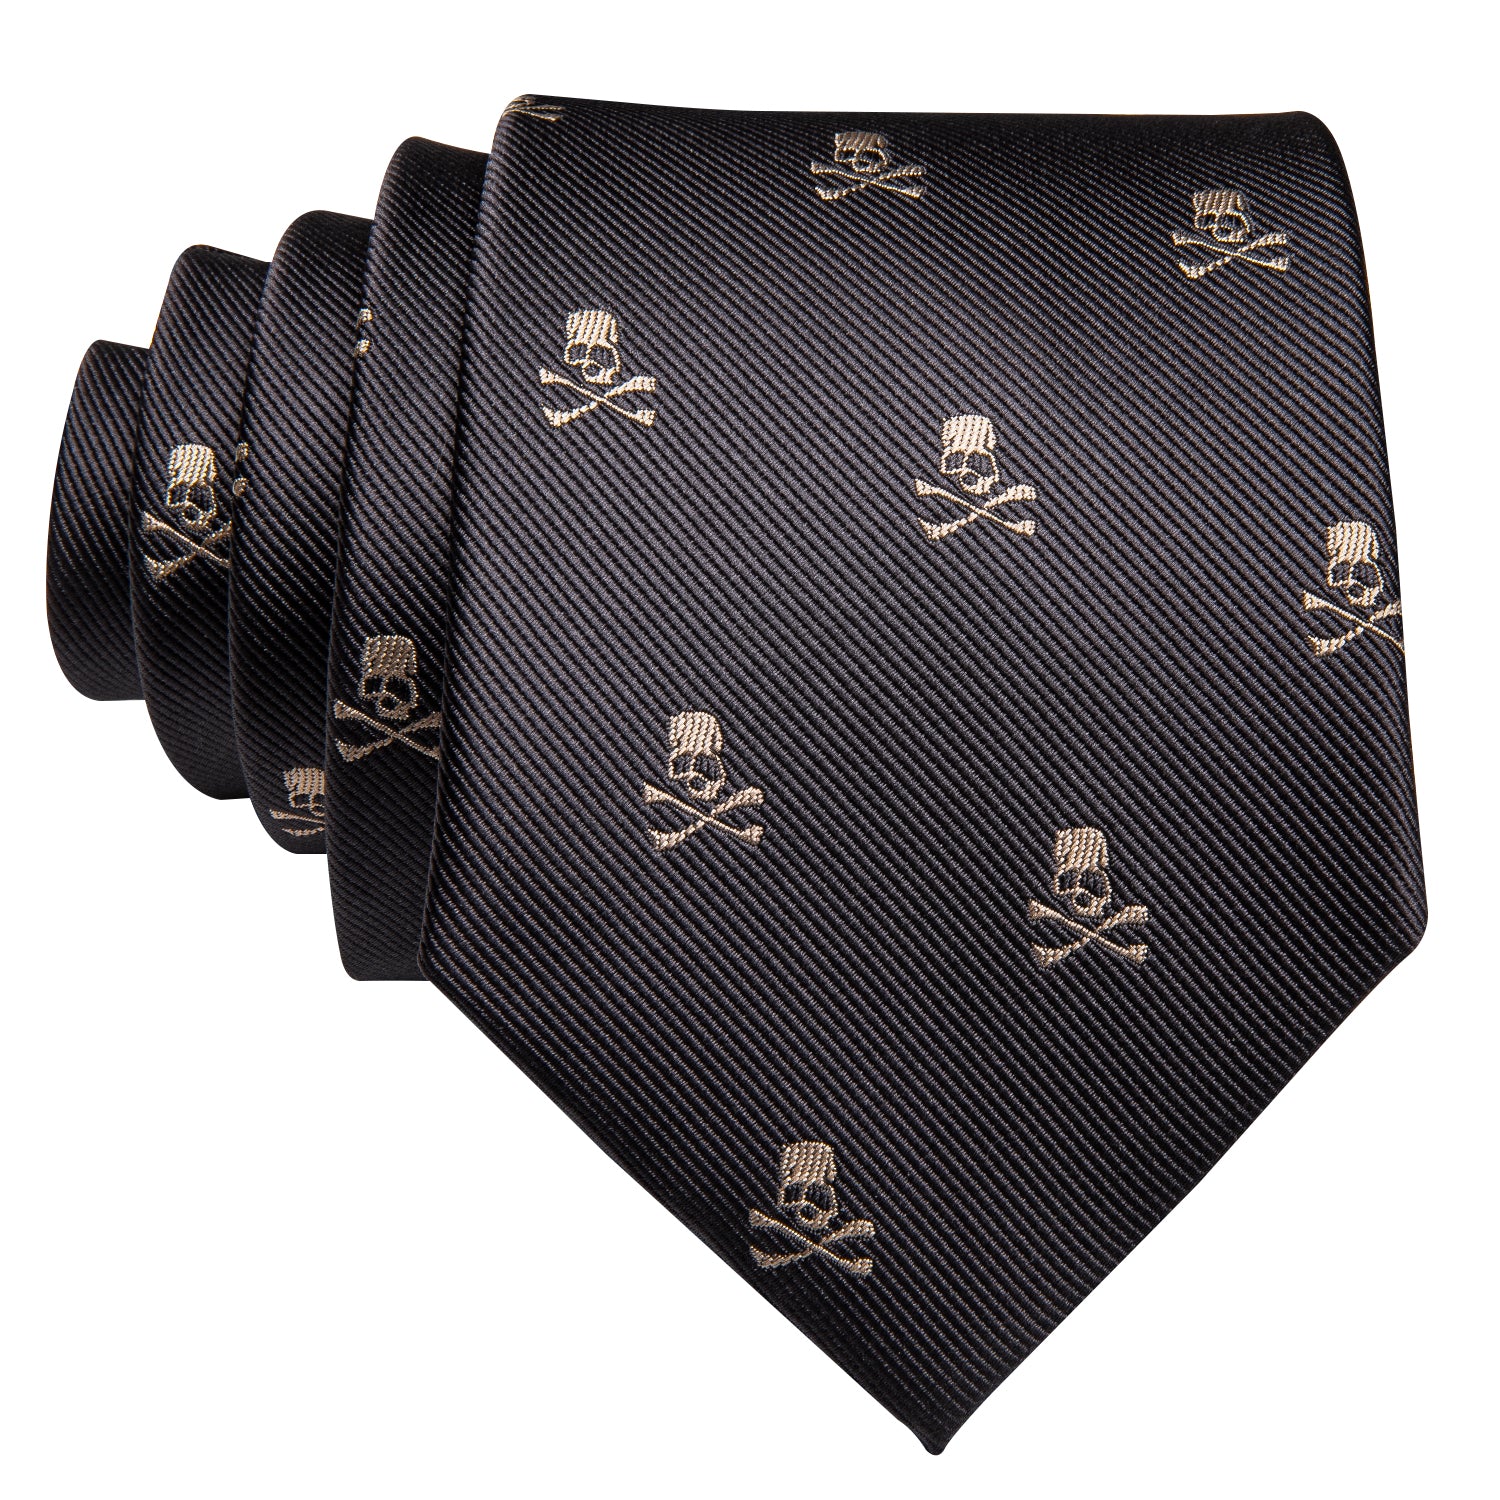 Barry.wang Gray Tie Novelty Halloween Skull Tie Hanky Cufflinks Set